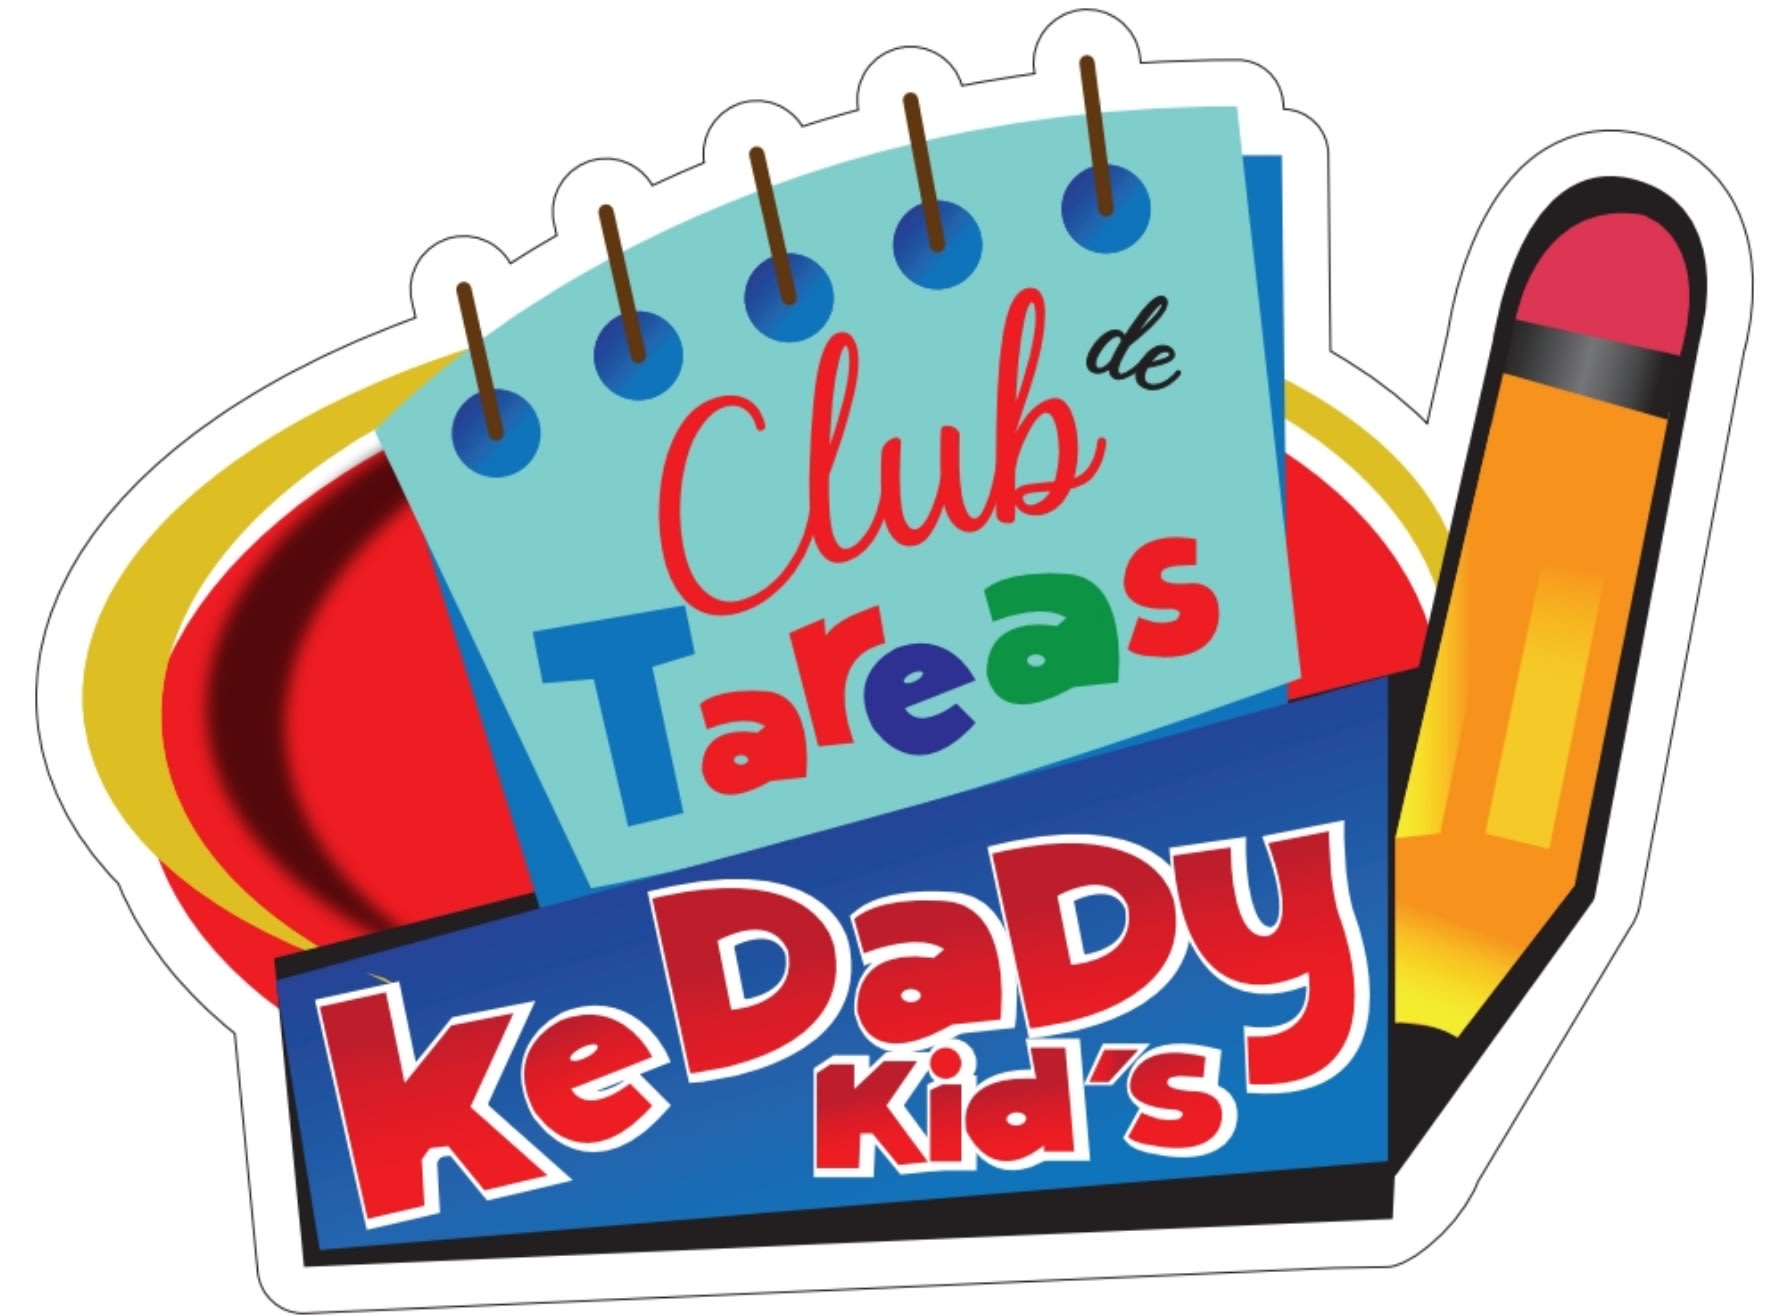 Club De Tareas Kedady